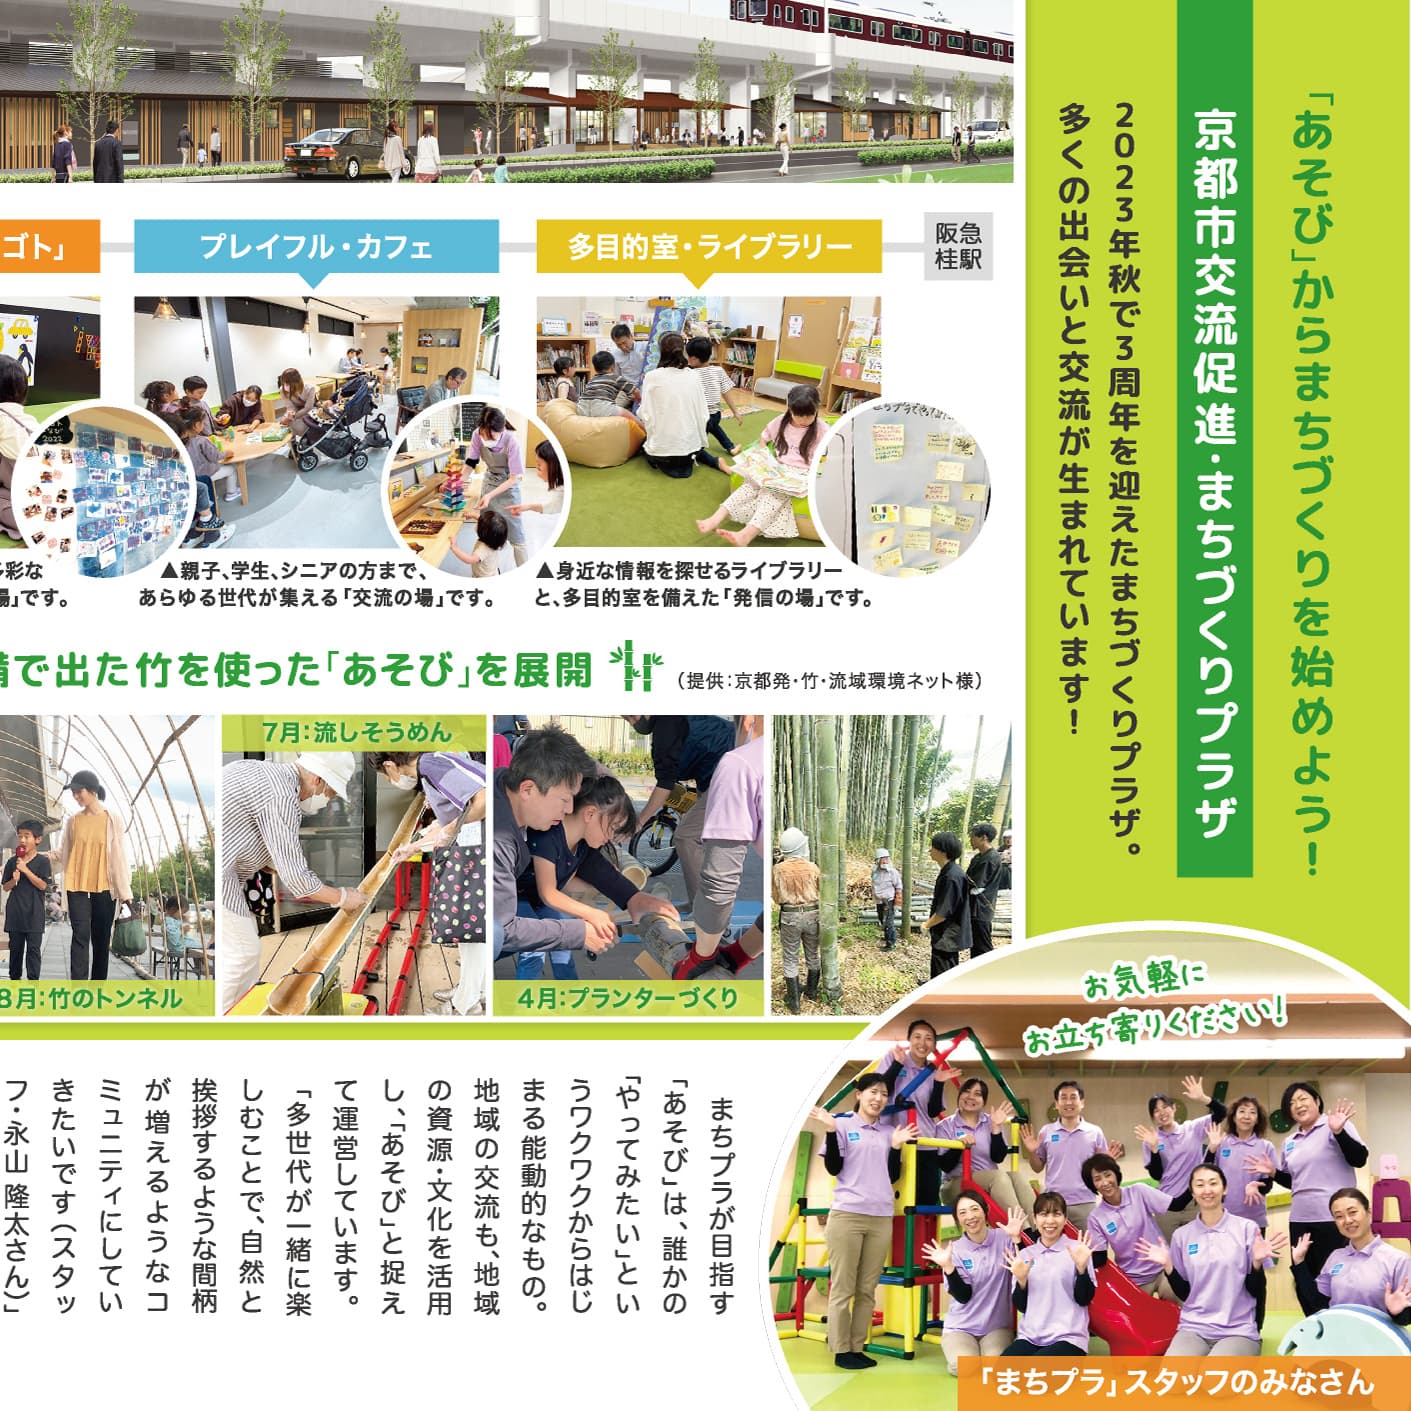 P.7 「あそび」からまちづくりを始めよう！『京都市交流促進・まちづくりプラザ』のイメージ